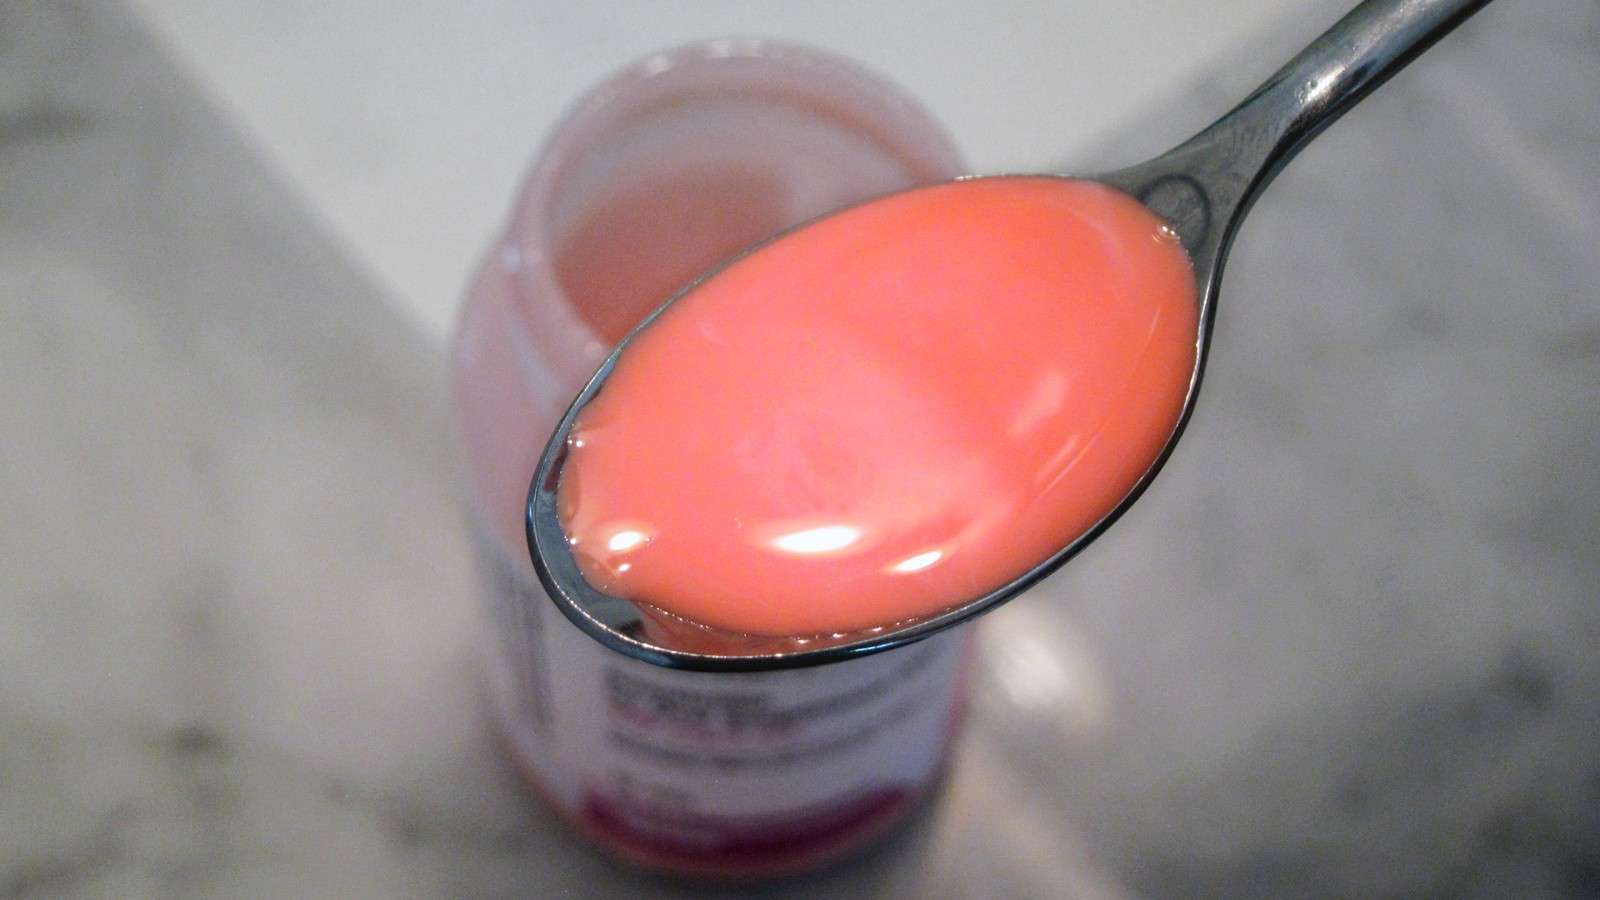 Bubble Gum Flavored Medicine